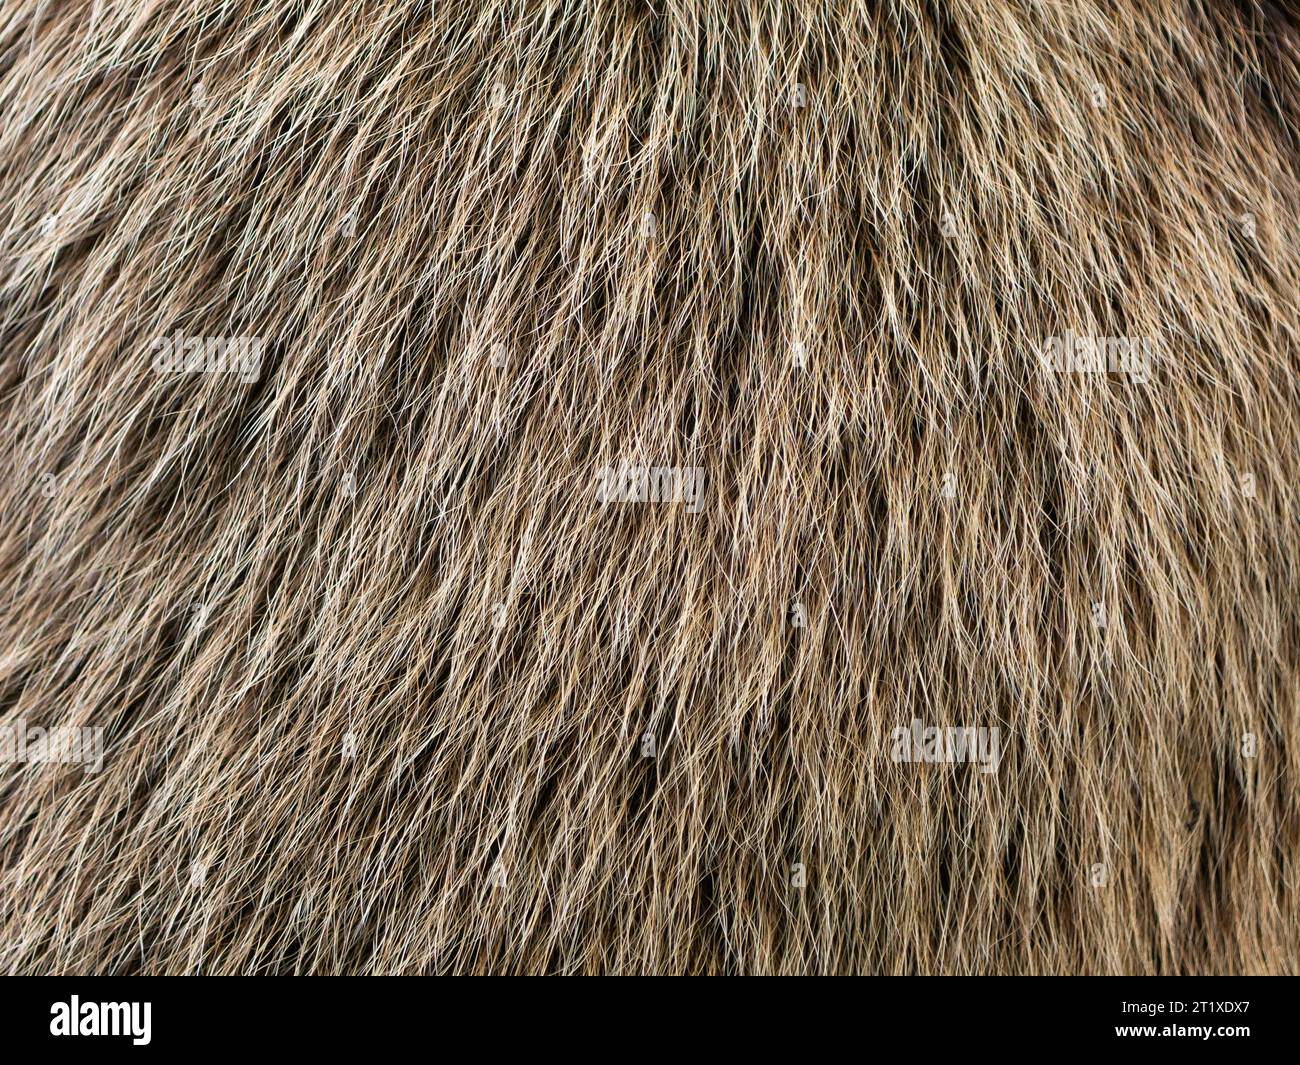 Texture de fourrure d'ours en gros plan. Les poils d'un animal Ursus arctos sont moelleux et doux. La structure peut être utilisée comme arrière-plan abstrait. Banque D'Images